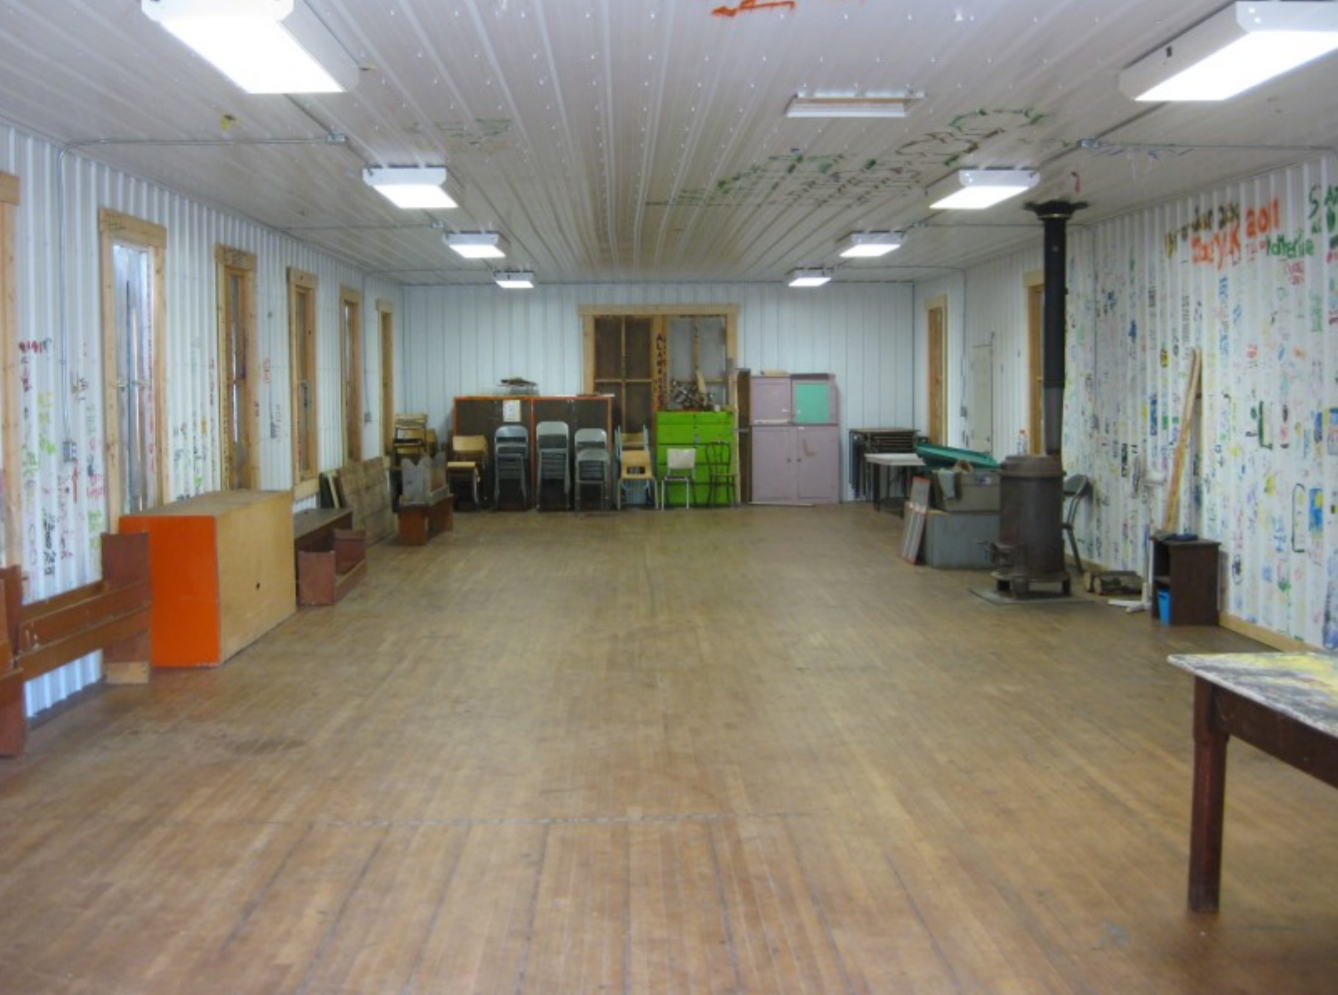 inside of a hall